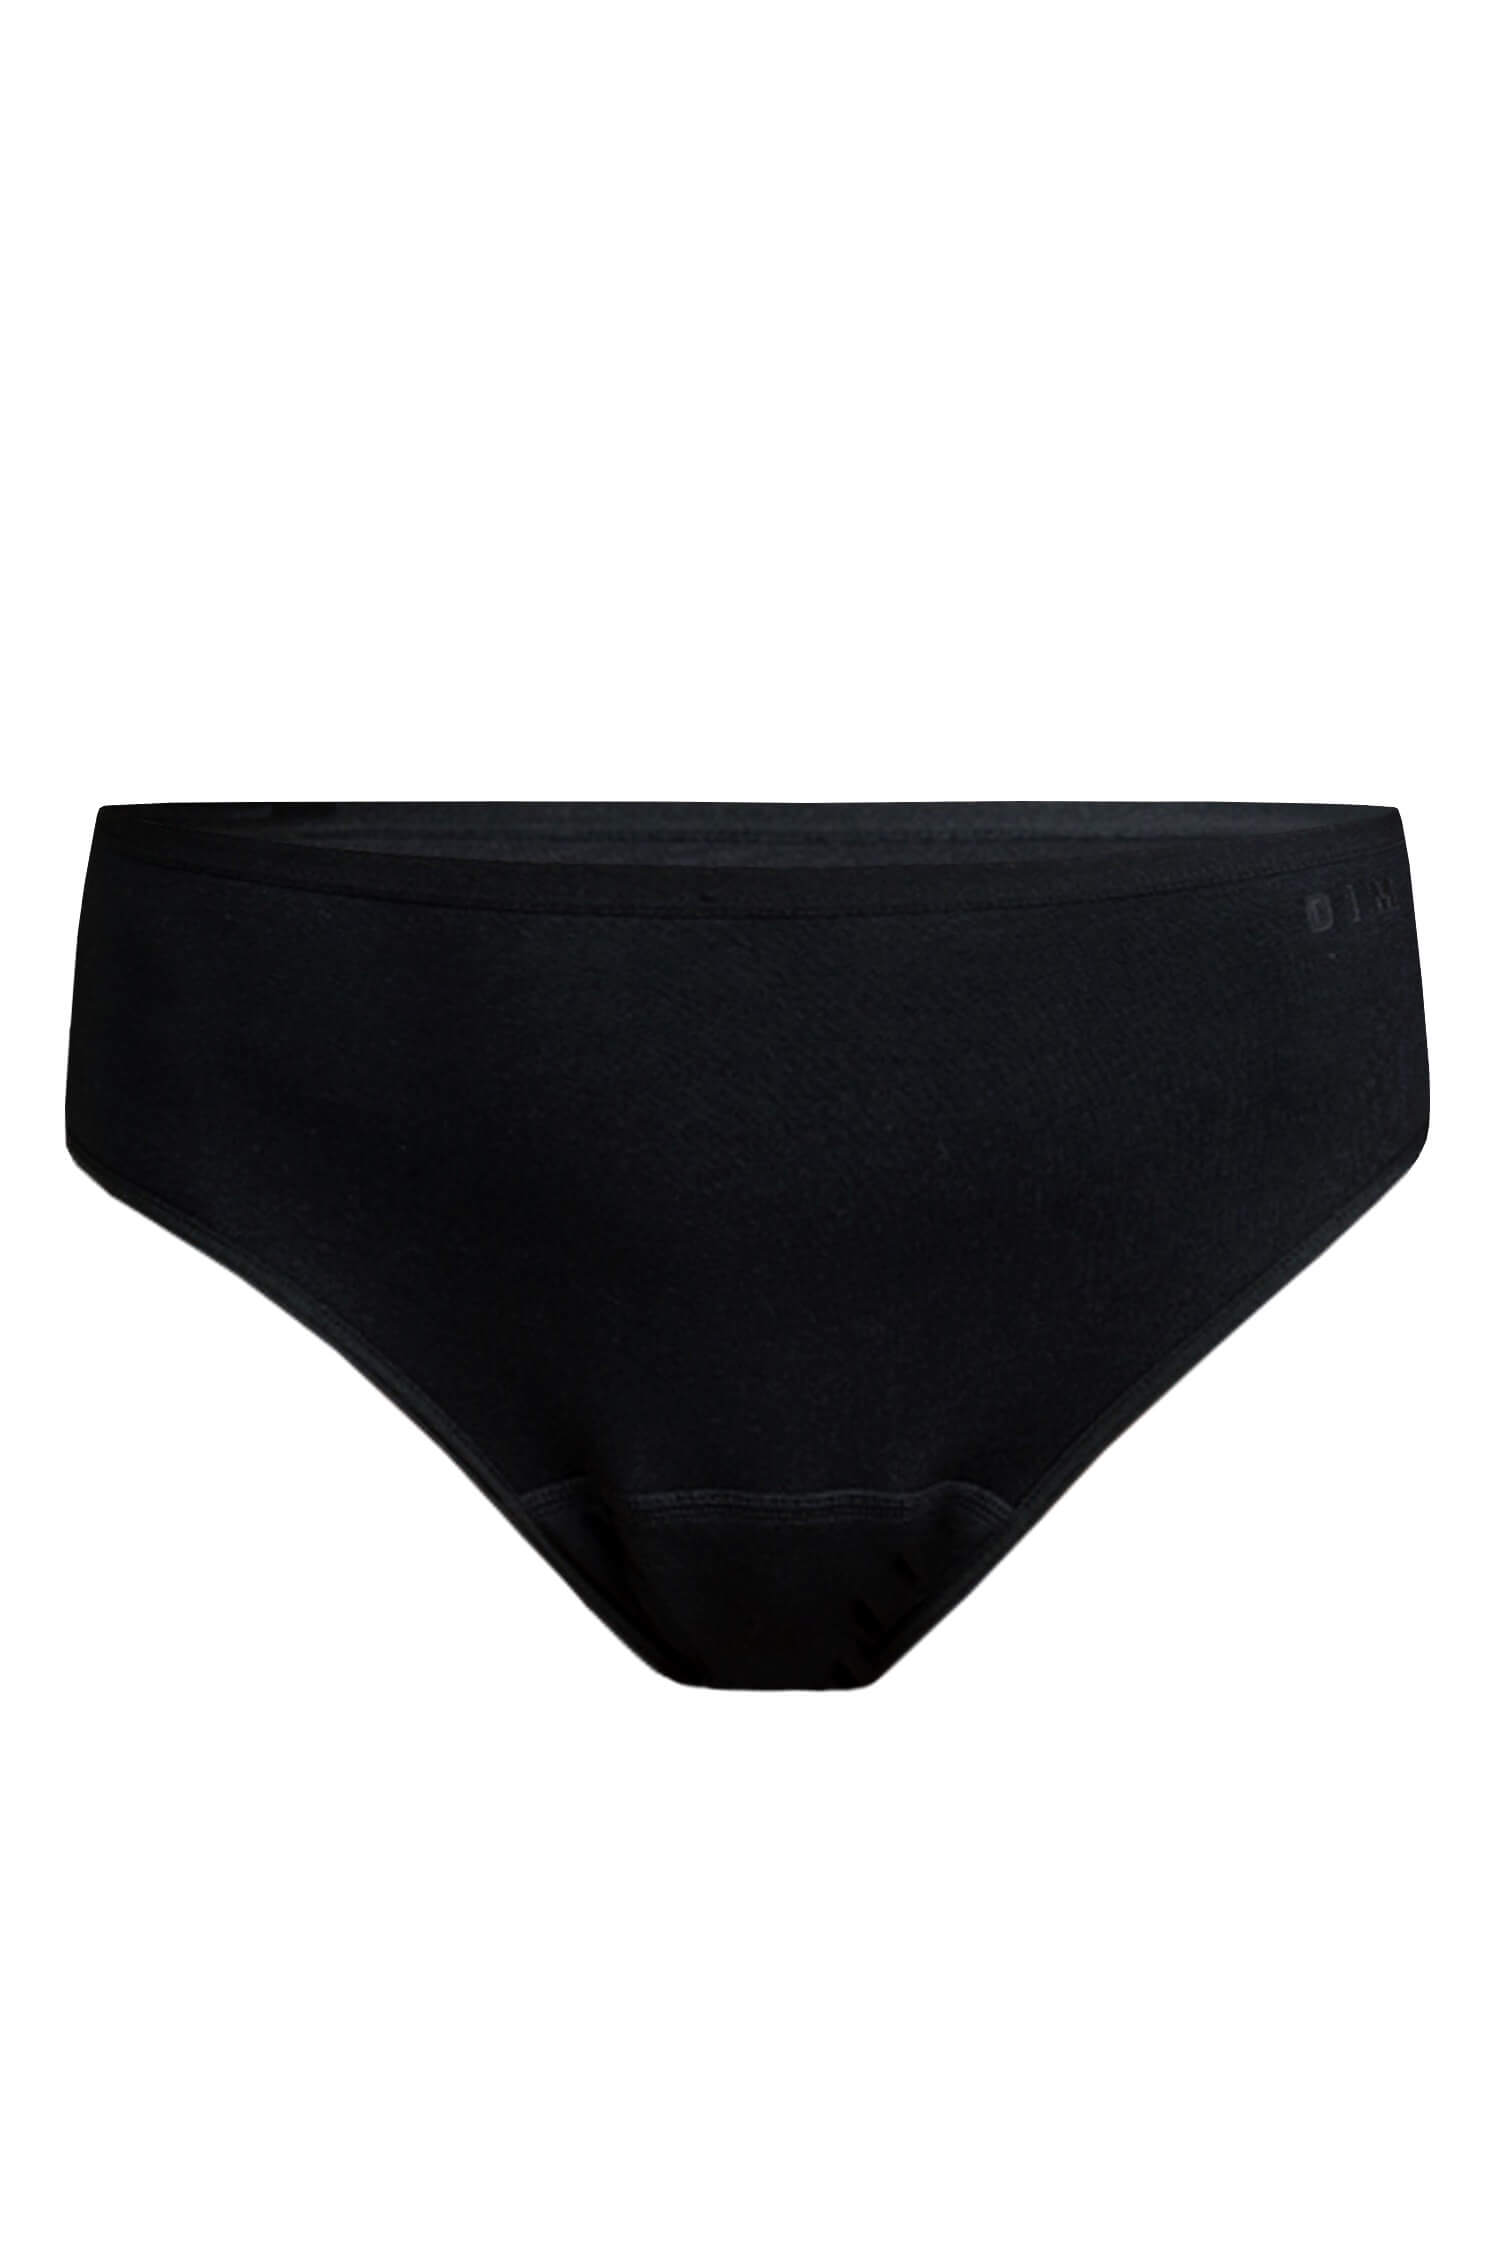 DIM hygienické absorpční kalhotky - Hygiene Slip S černá